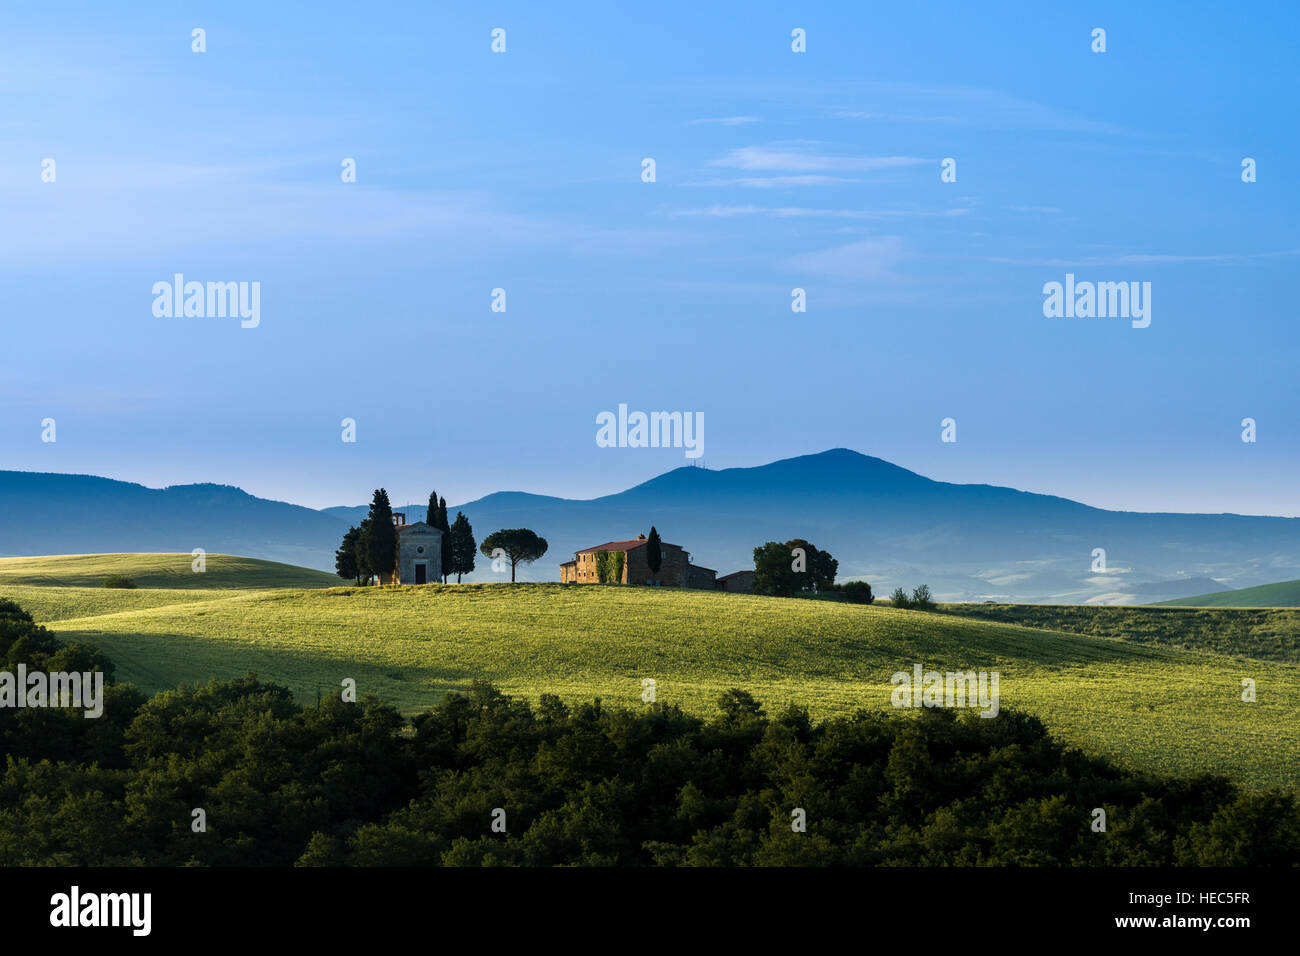 Vert paysage typique de la toscane en val d'orcia avec une ferme et une petite chapelle sur une colline, champs, cyprès, arbres et ciel nuageux, bleu Banque D'Images